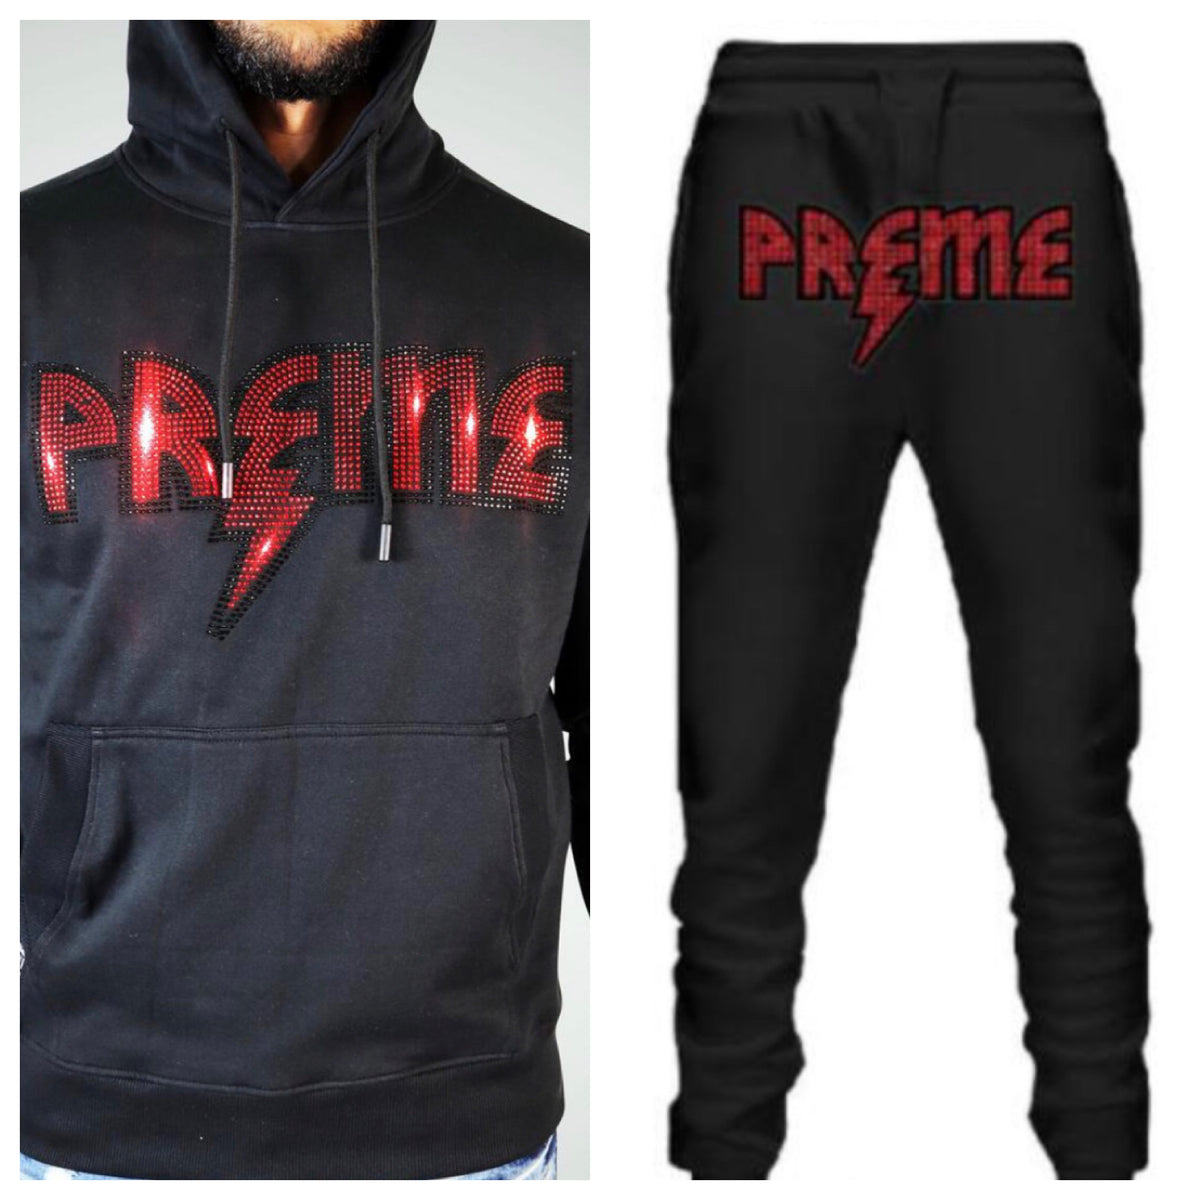 Preme-Studded Logo Jogging Set-Black/Red